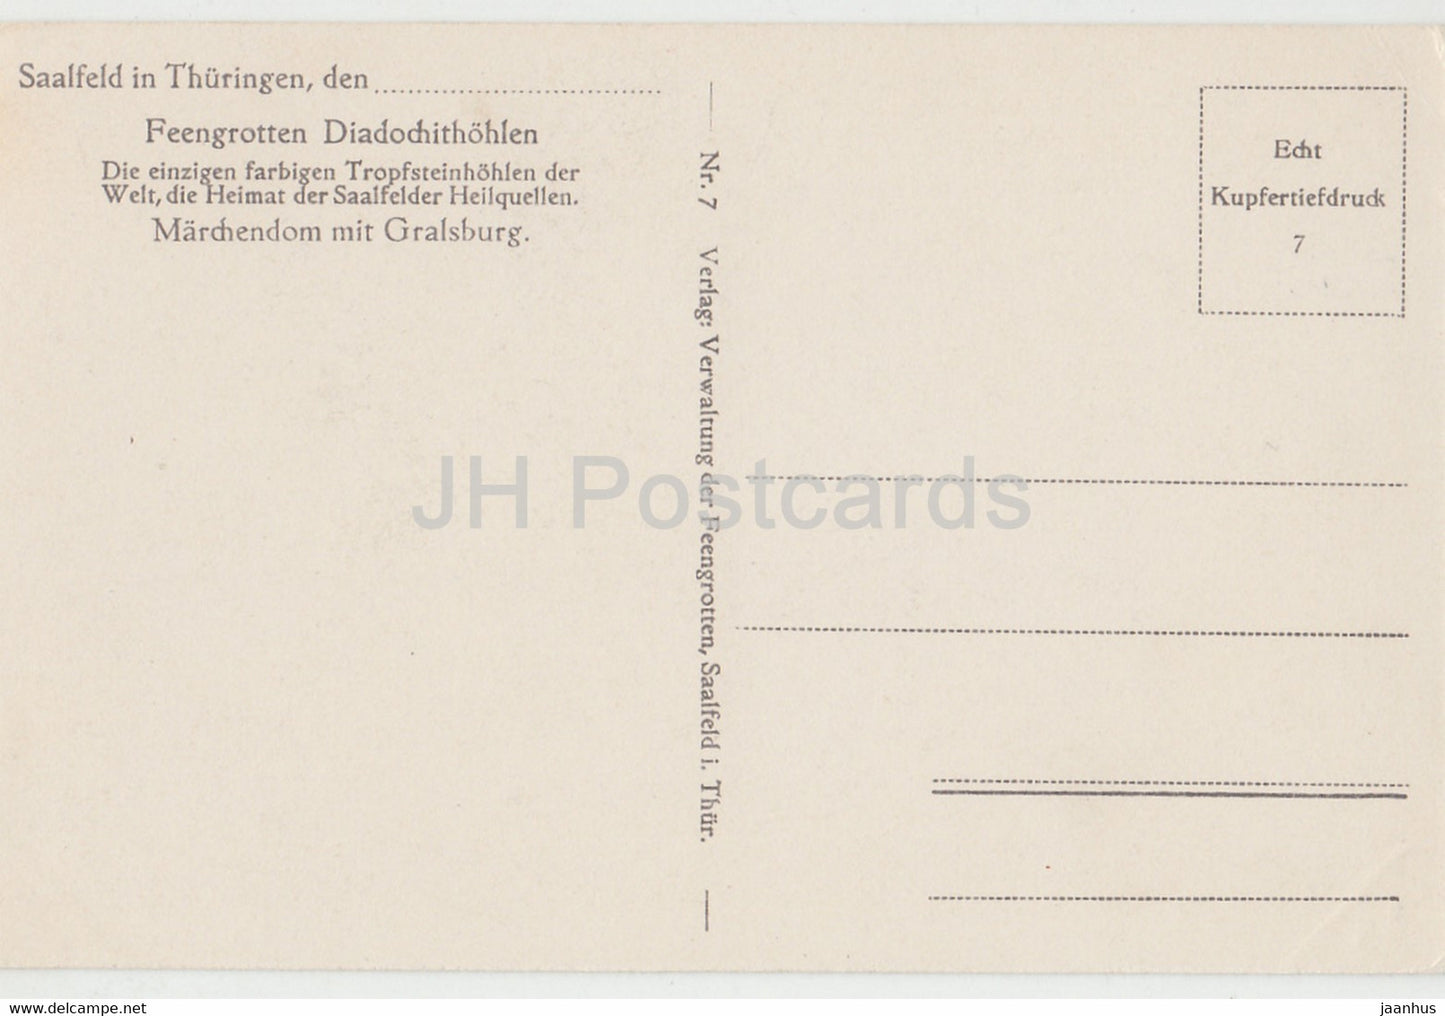 Saalfeld in Thüringen - Feengrotten - Marchendom mit Gralsburg - Höhle - 7 - alte Postkarte - Deutschland - unbenutzt